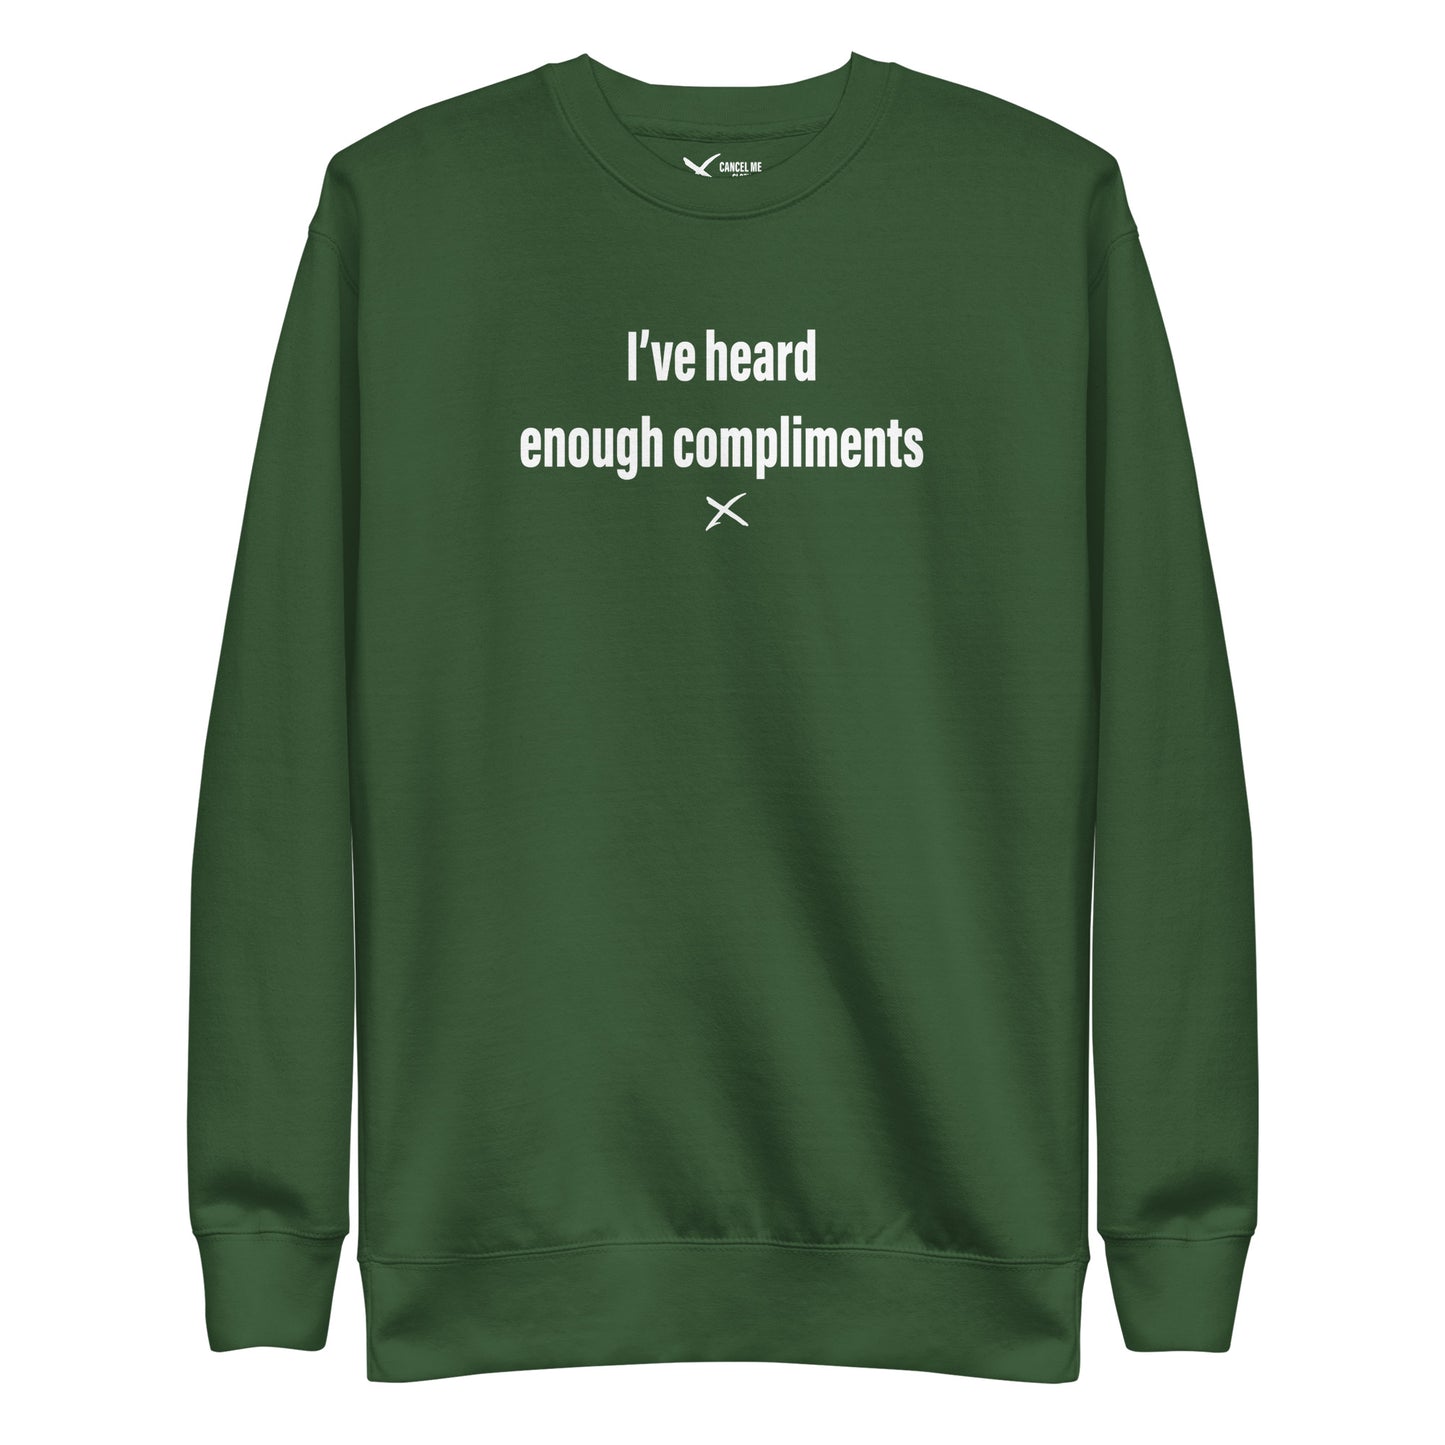 I've heard enough compliments - Sweatshirt